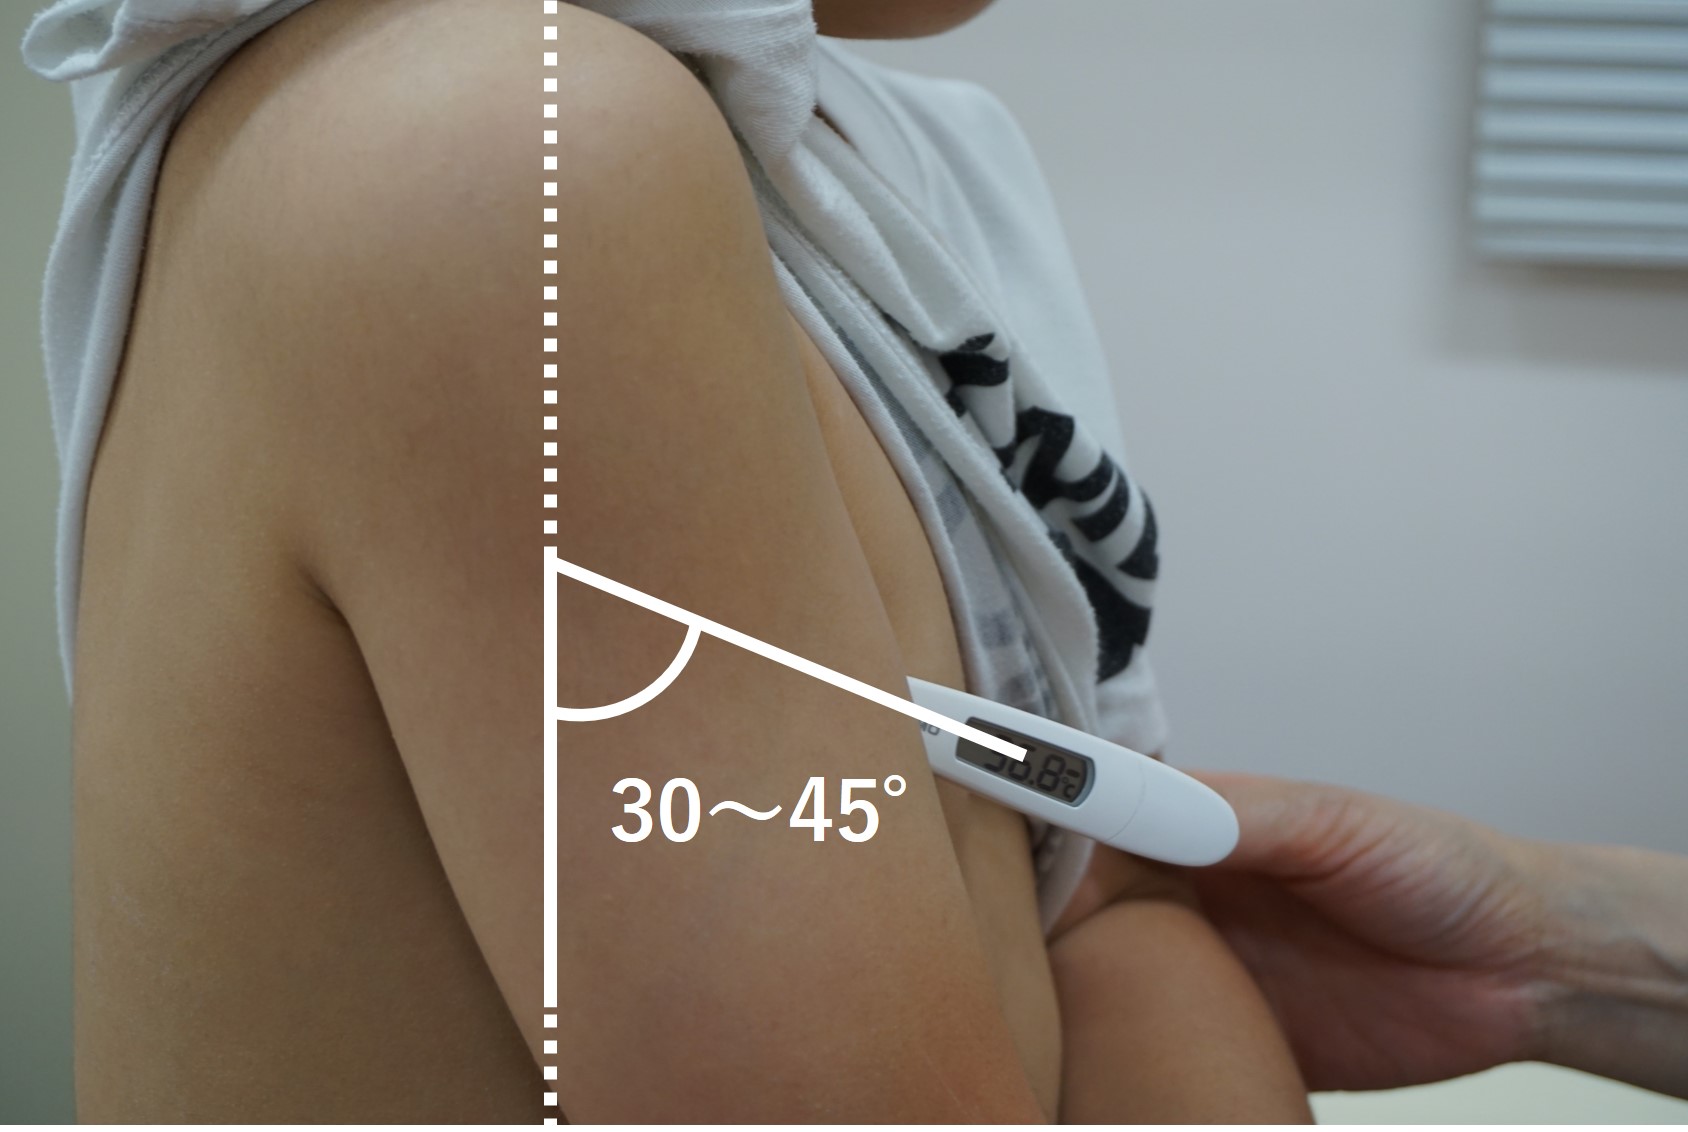 表-バイタルサイン-体温-腋窩用体温計の挿入角度.jpg